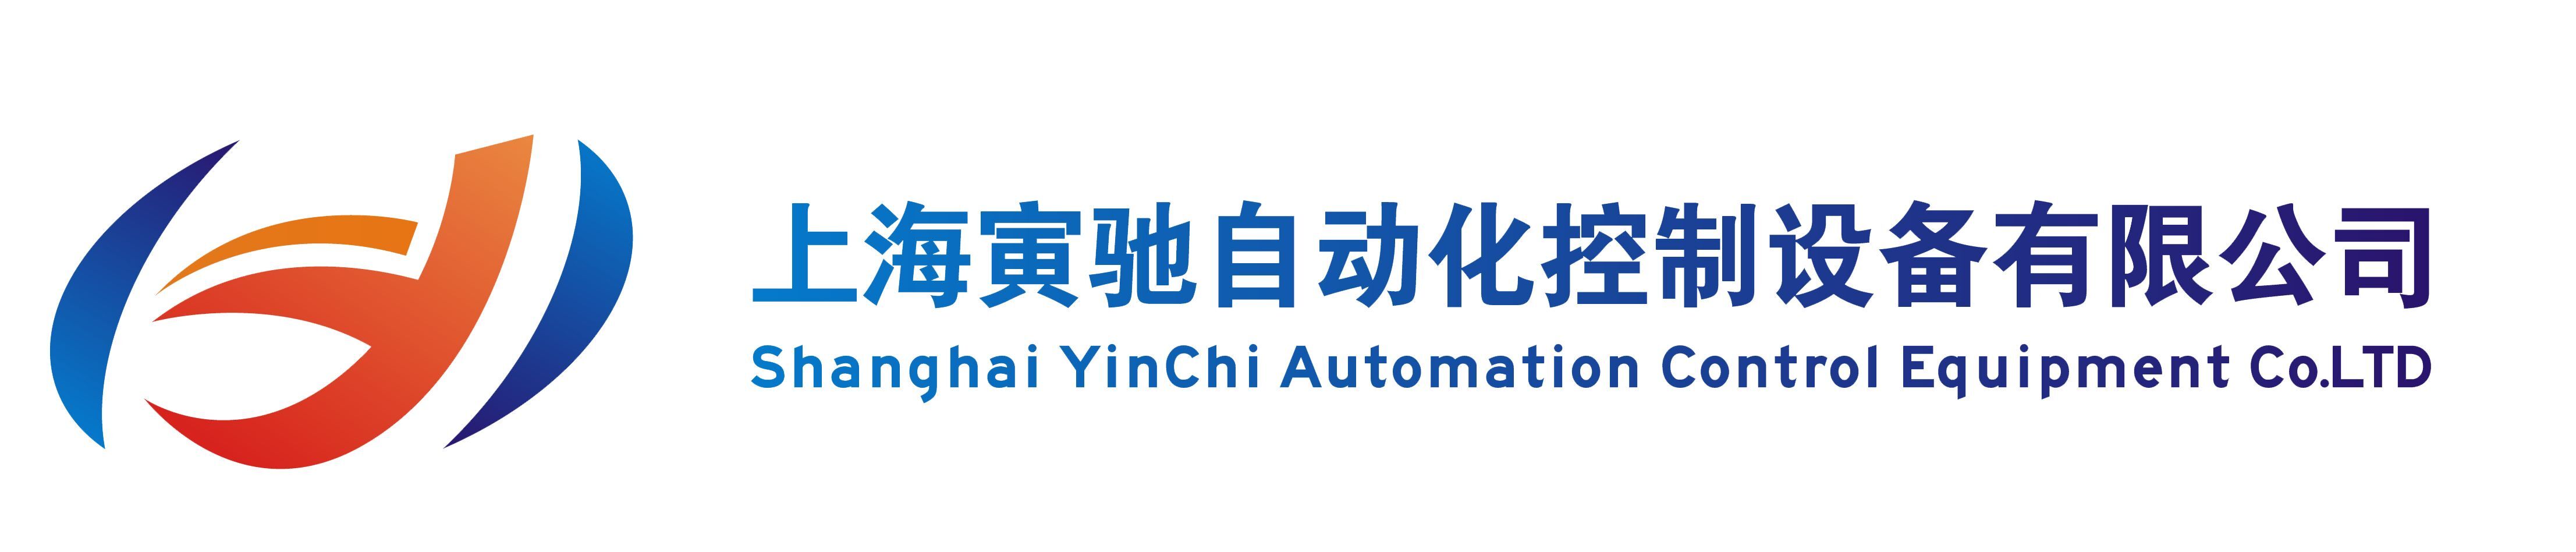 上海寅驰自动化控制设备有限公司